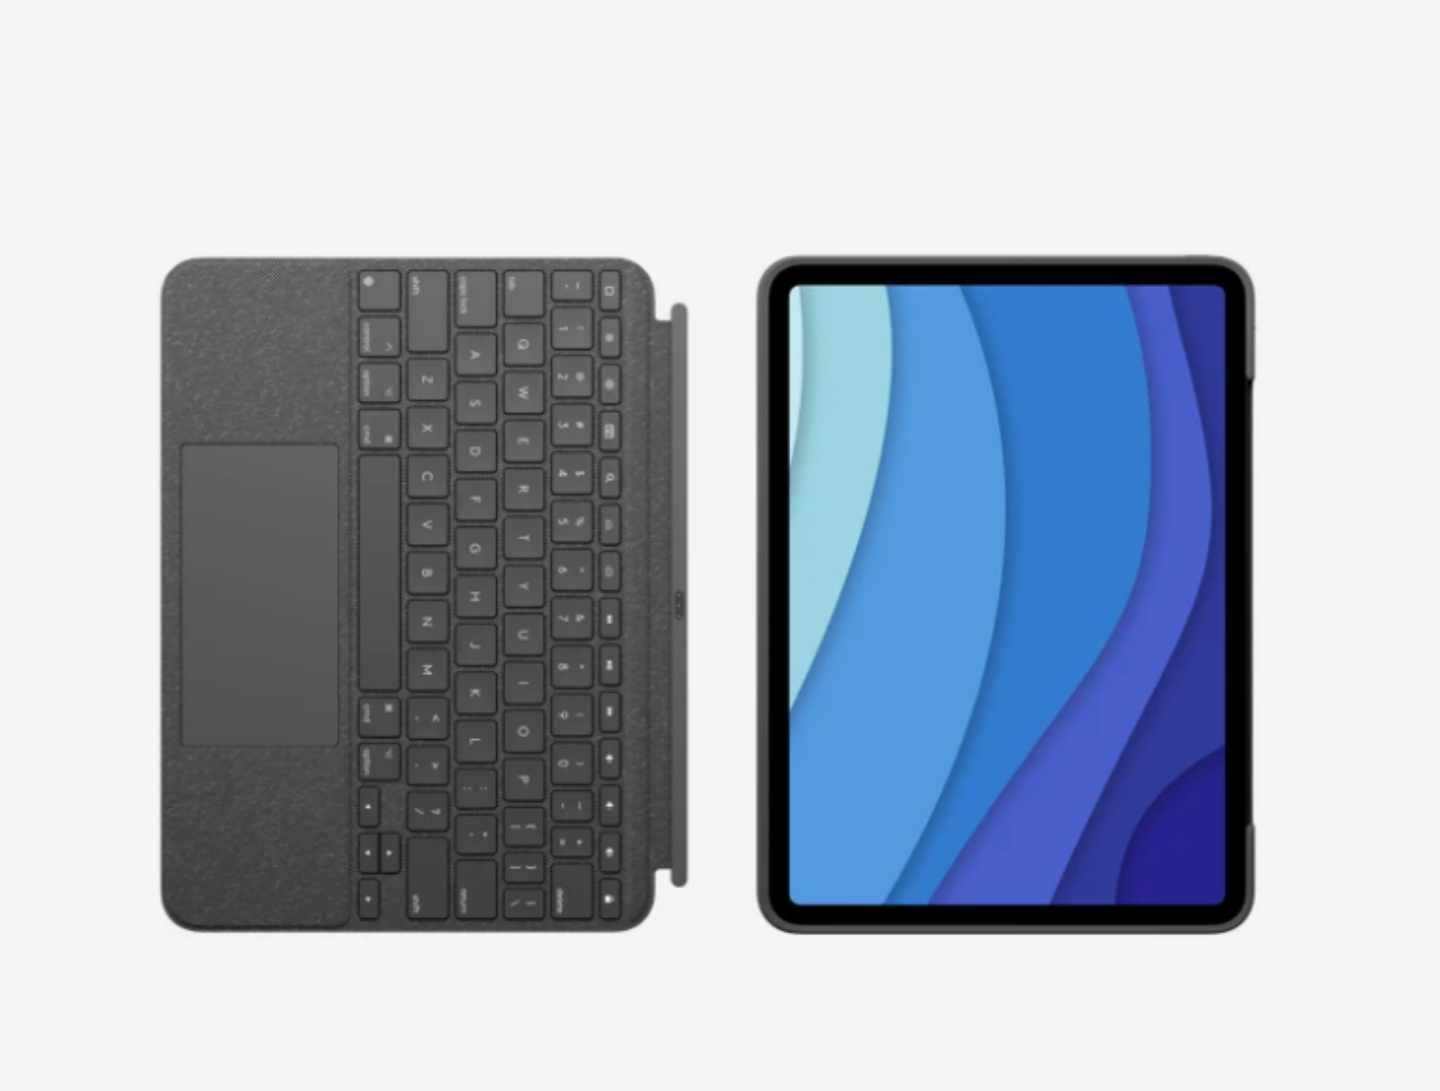 羅技推出『 Combo Touch 』鍵盤保護殼 12.9 吋和 11 吋的新款 iPad Pro 都適用！